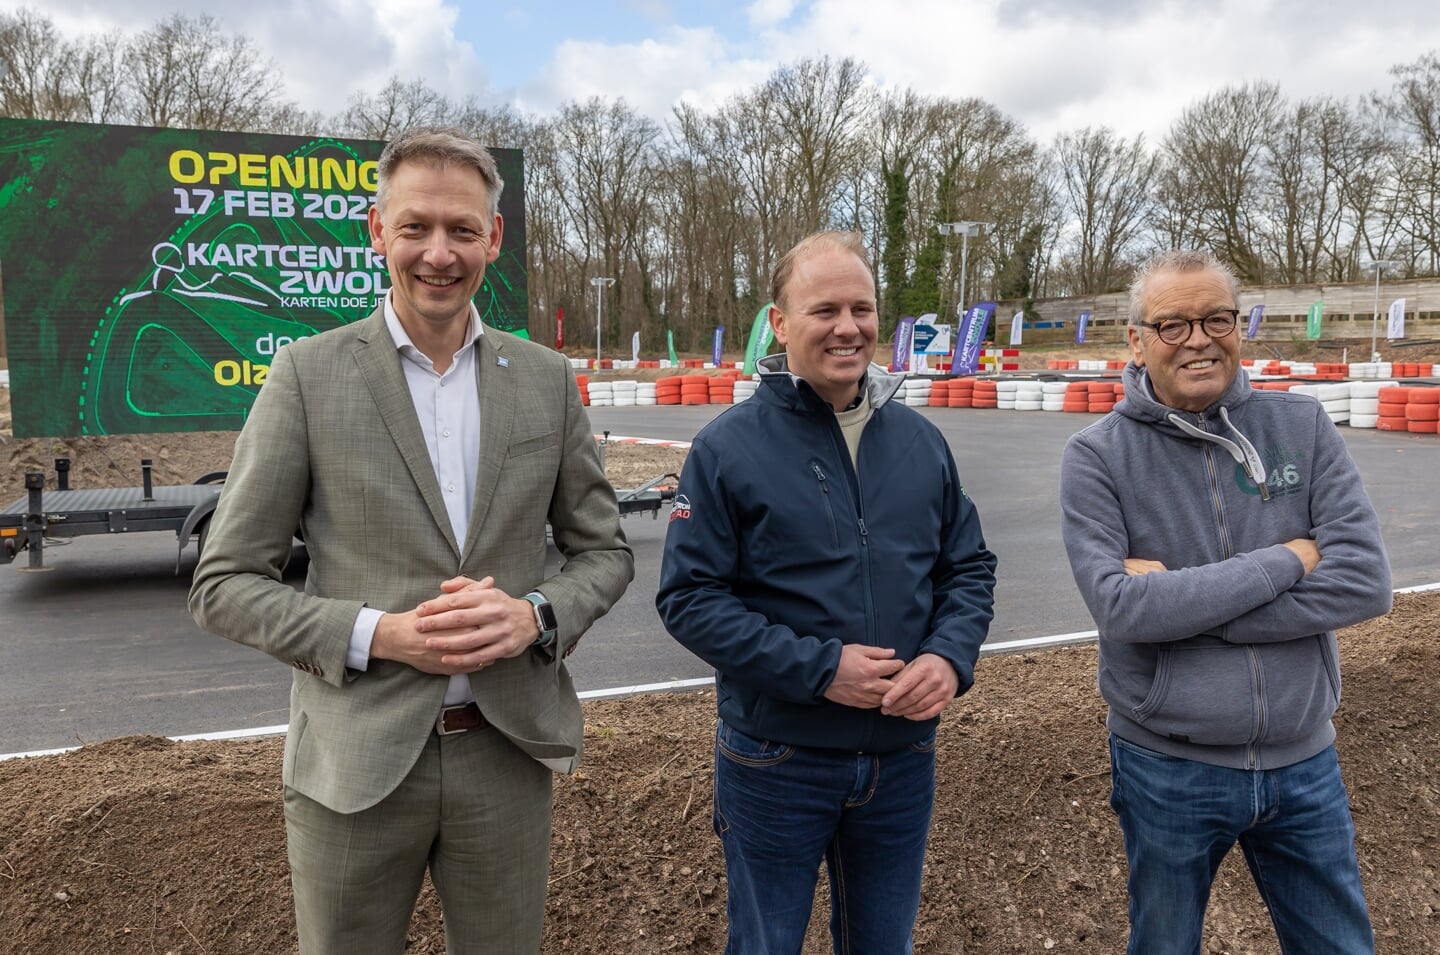 Opening vernieuwd Kartcentrum Zwolle door wethouder Michiel van Willigen (links) en presentator Olav Mol (rechts). In het midden een trotse eigenaar Christiaan Snoek.